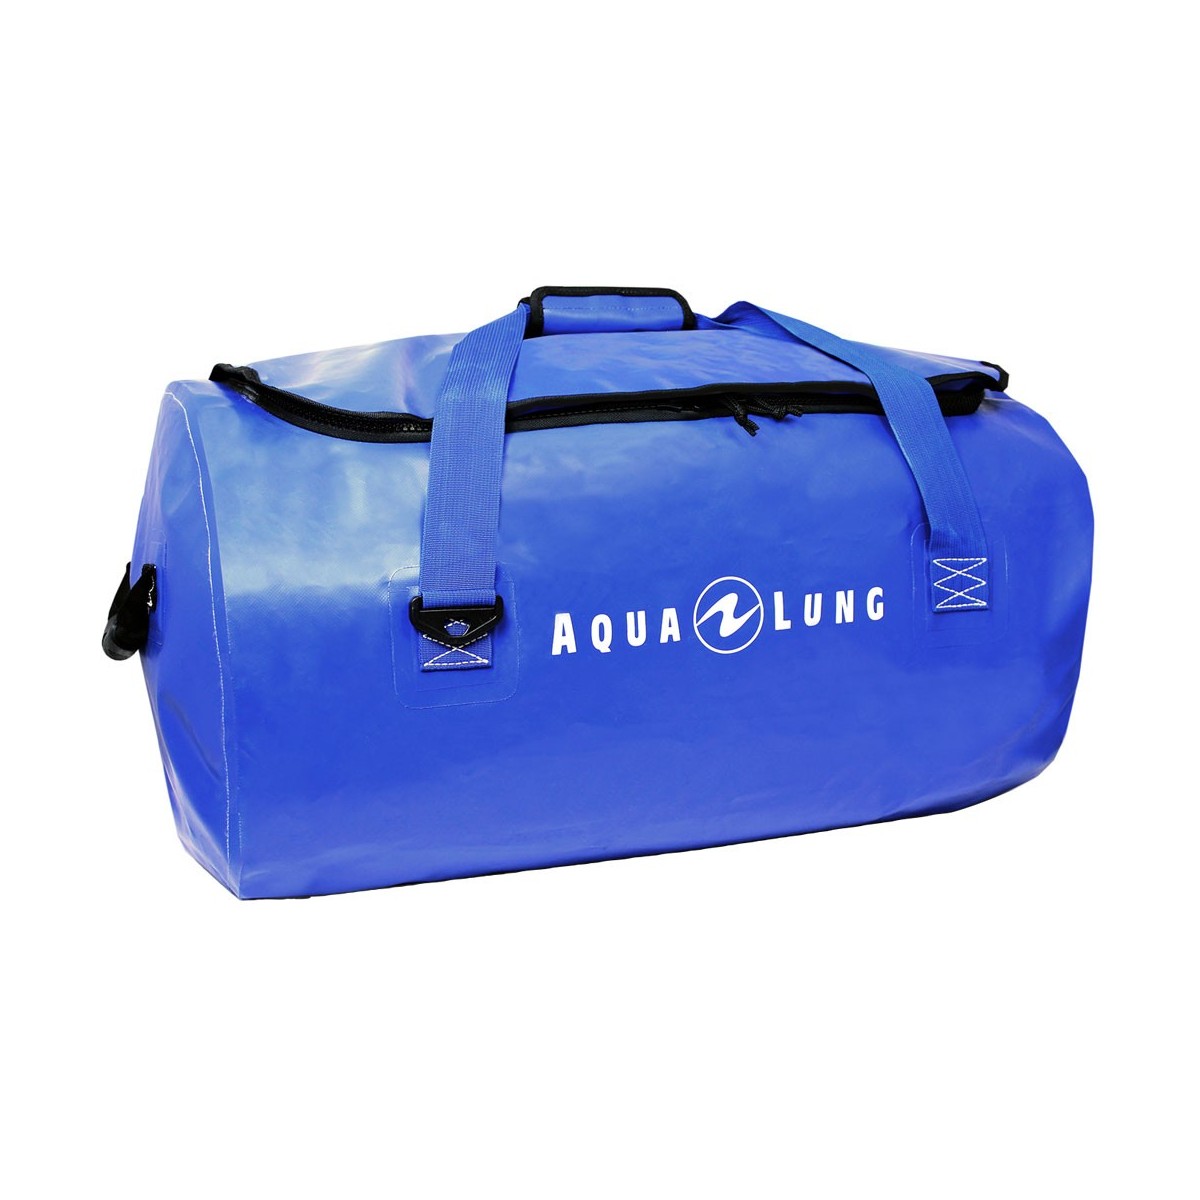 Aqua lung Defense Dry Duffel Bag